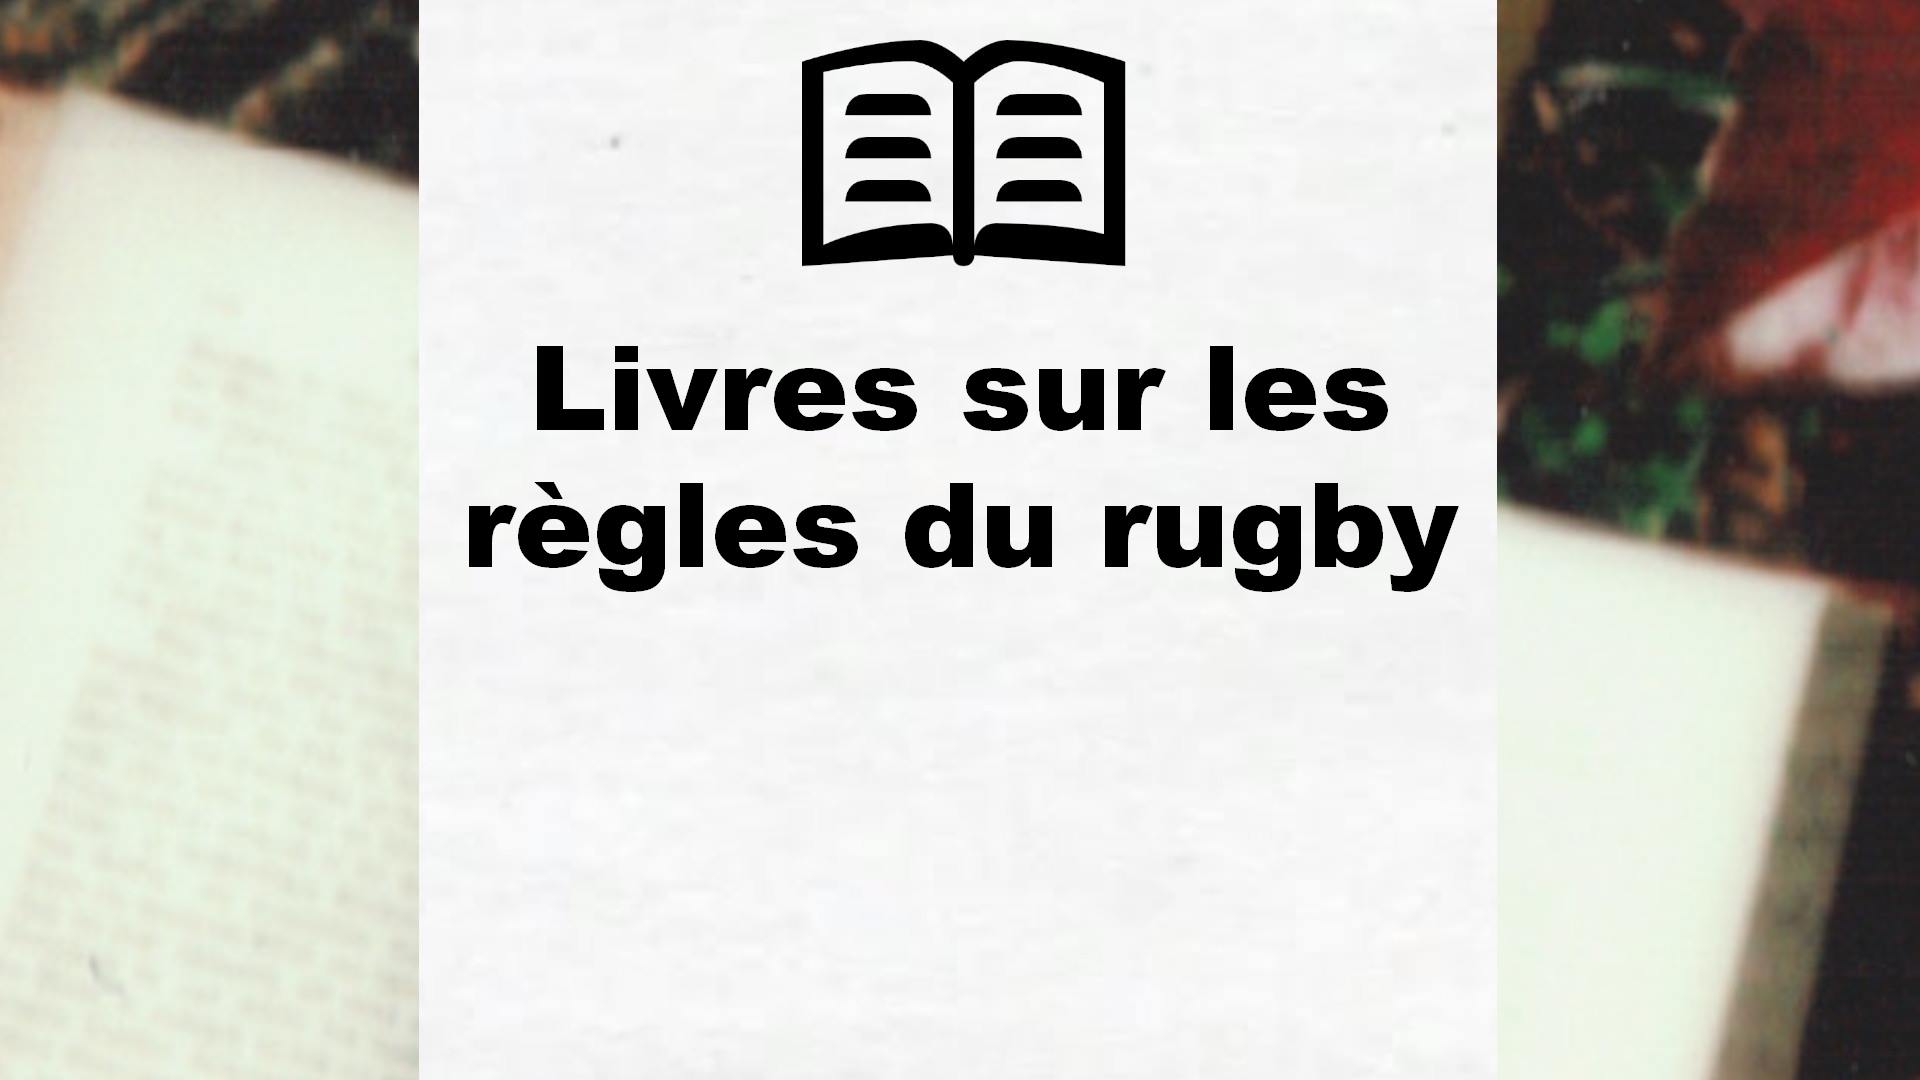 Livres sur les règles du rugby